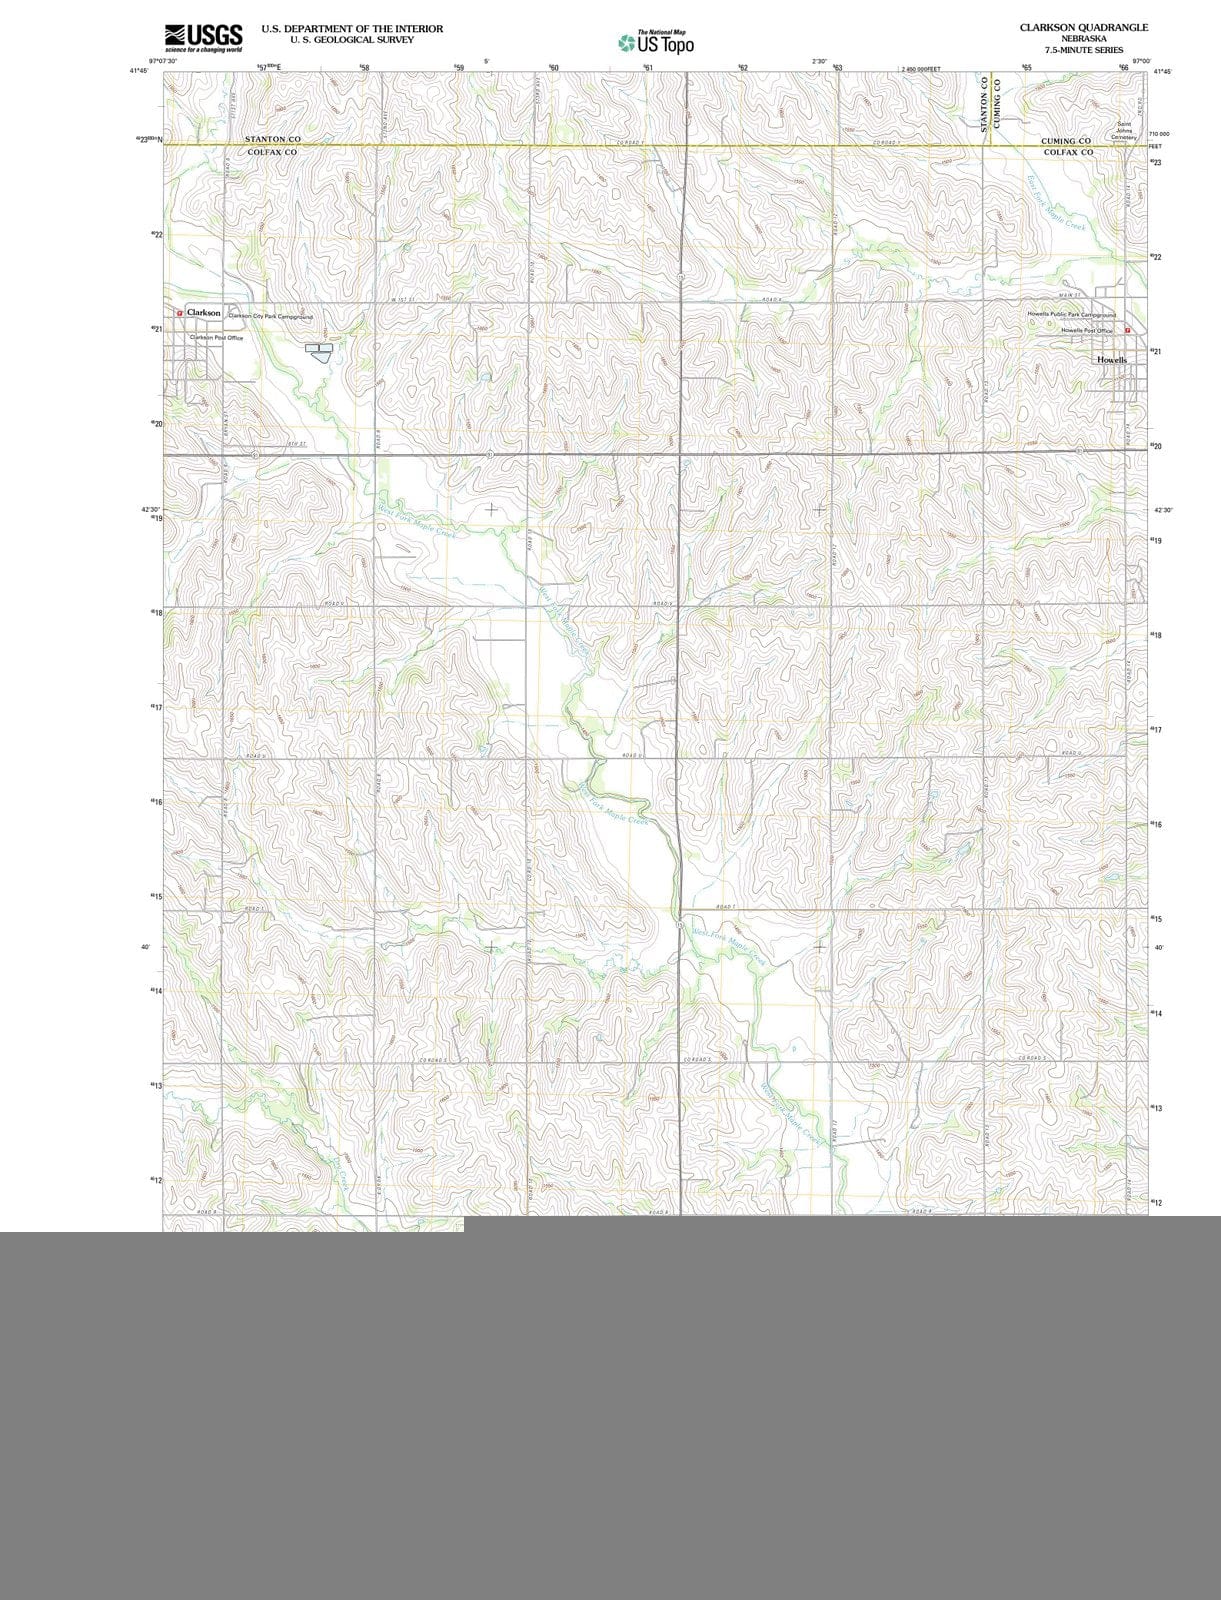 2011 Clarkson, NE - Nebraska - USGS Topographic Map